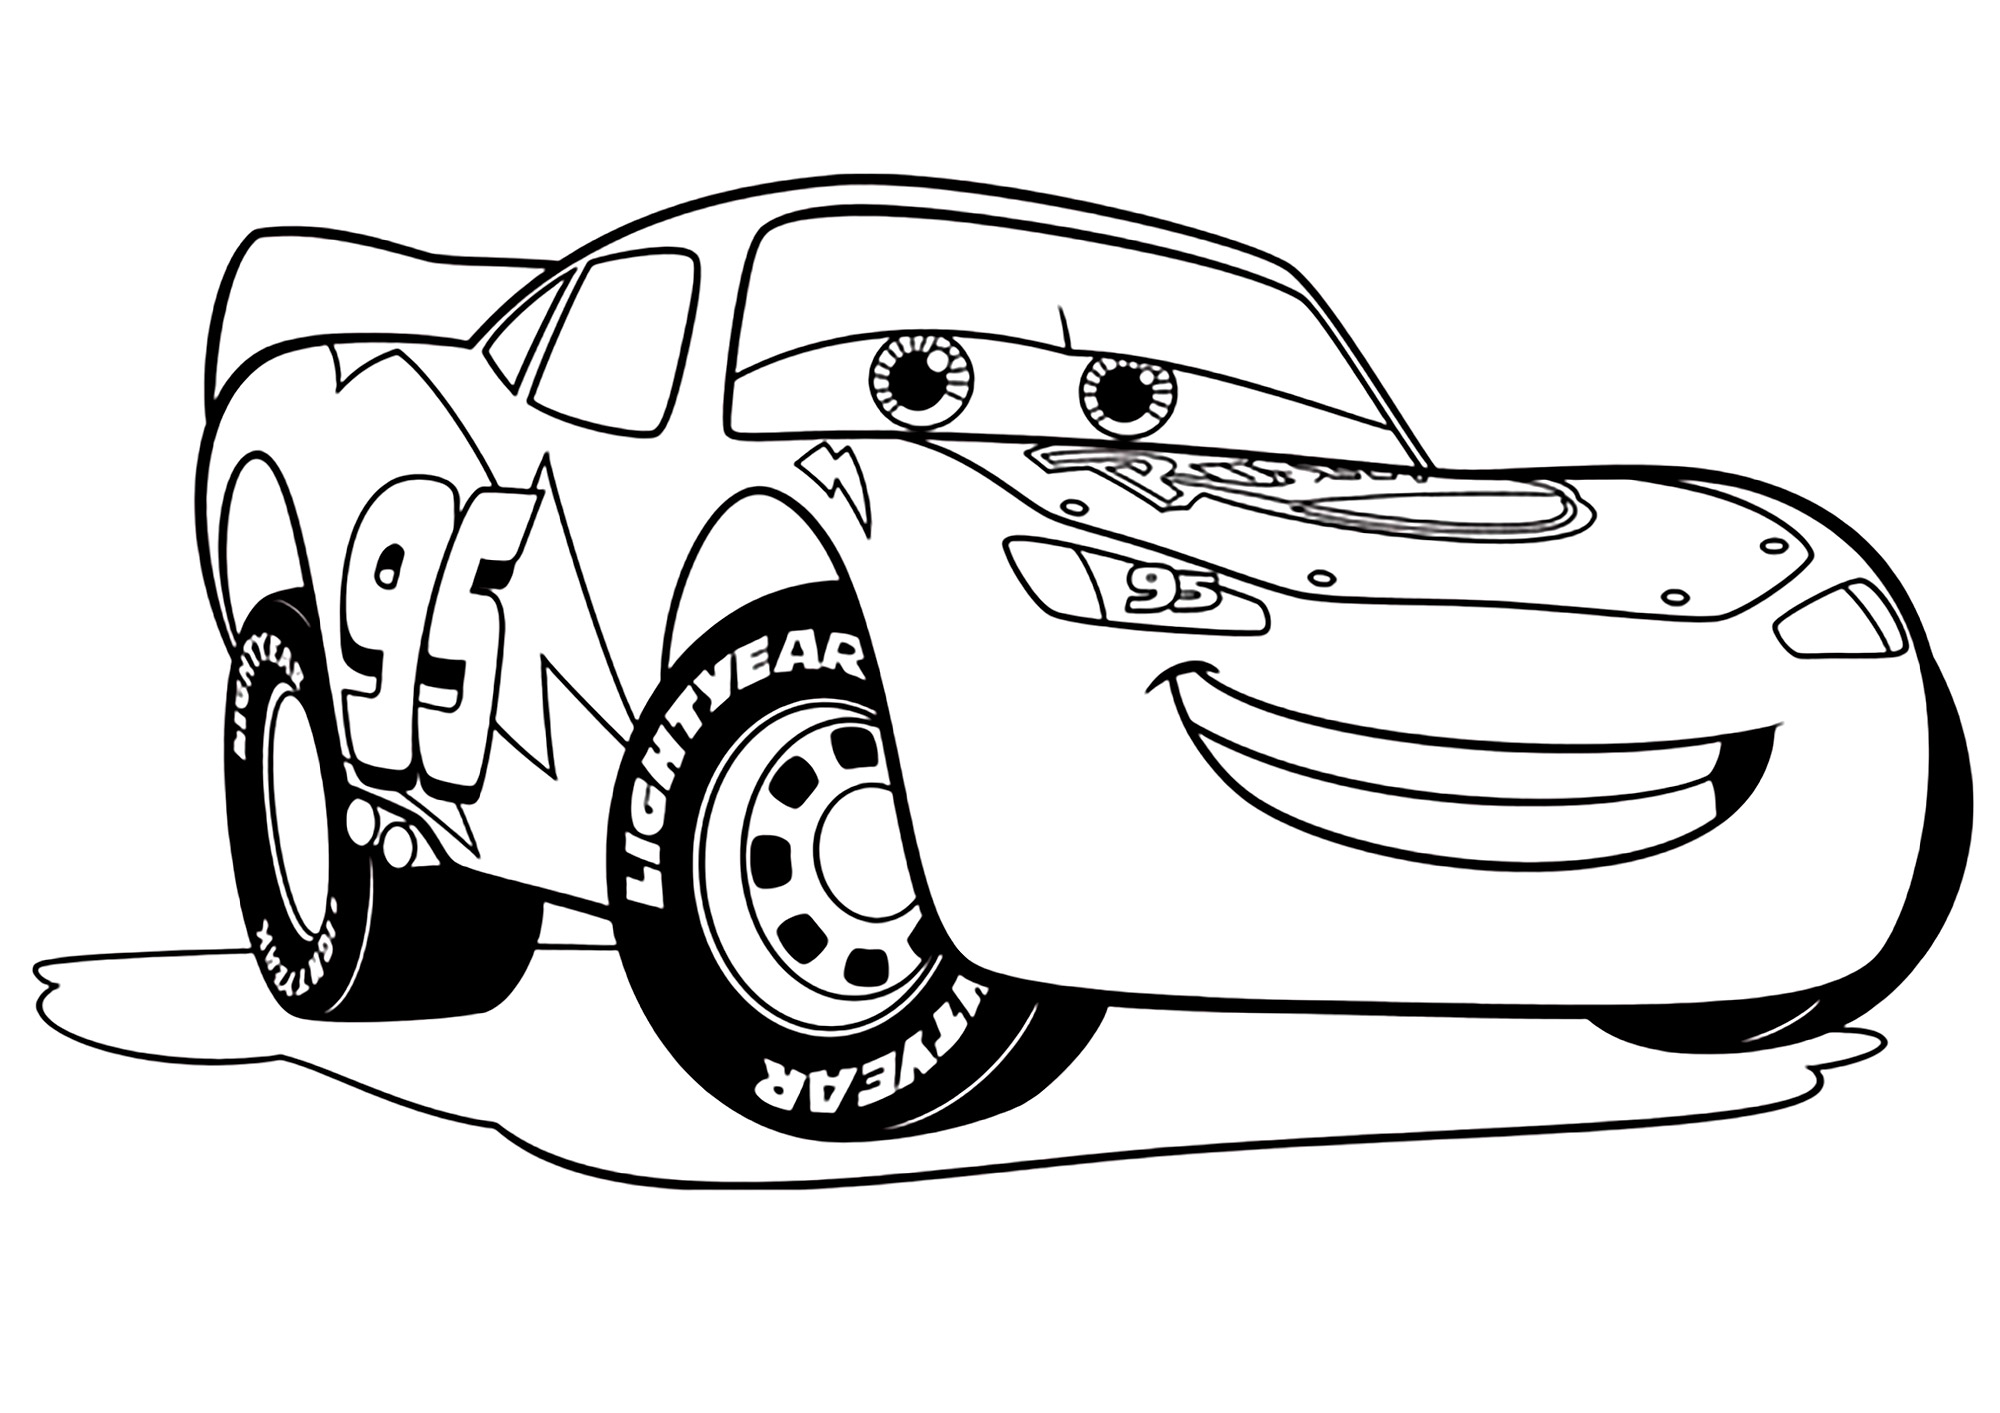 Image de Cars 3 à télécharger et colorier : Flash Mc Queen - Coloriage